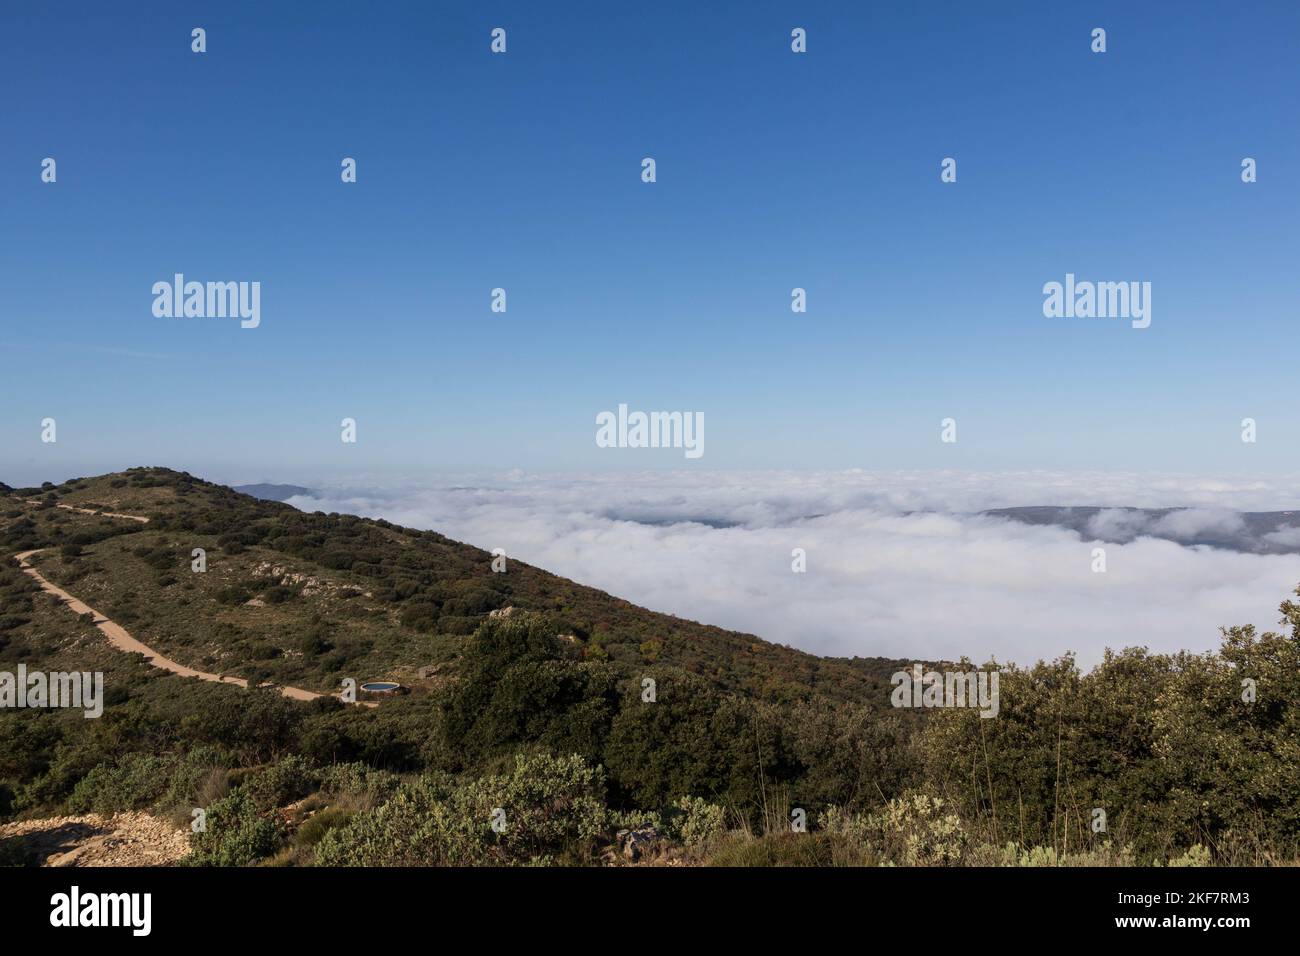 Alcoi vom roten Brunnenberg mit Nebel, Alicante, Spanien. Stockfoto